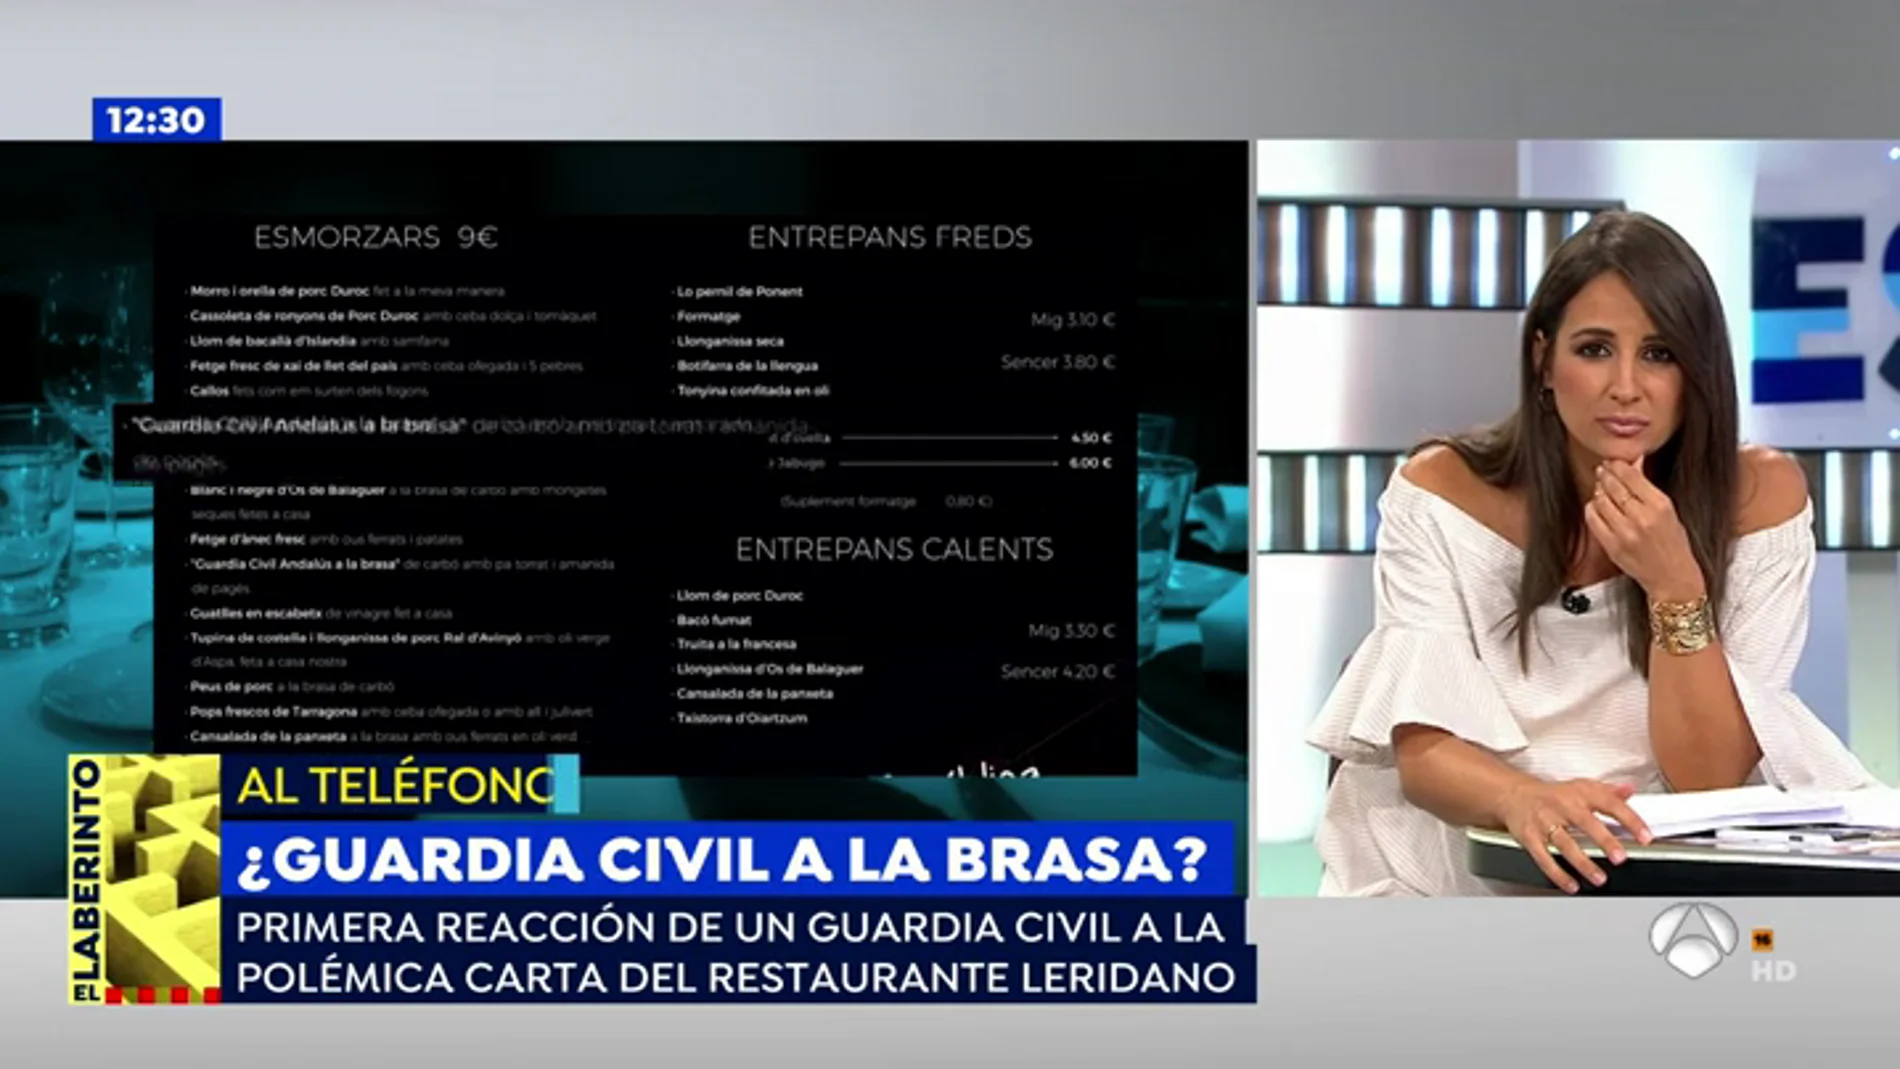 Un restaurante de Lérida ofrece en su carta "Guardia civil andaluz asado"